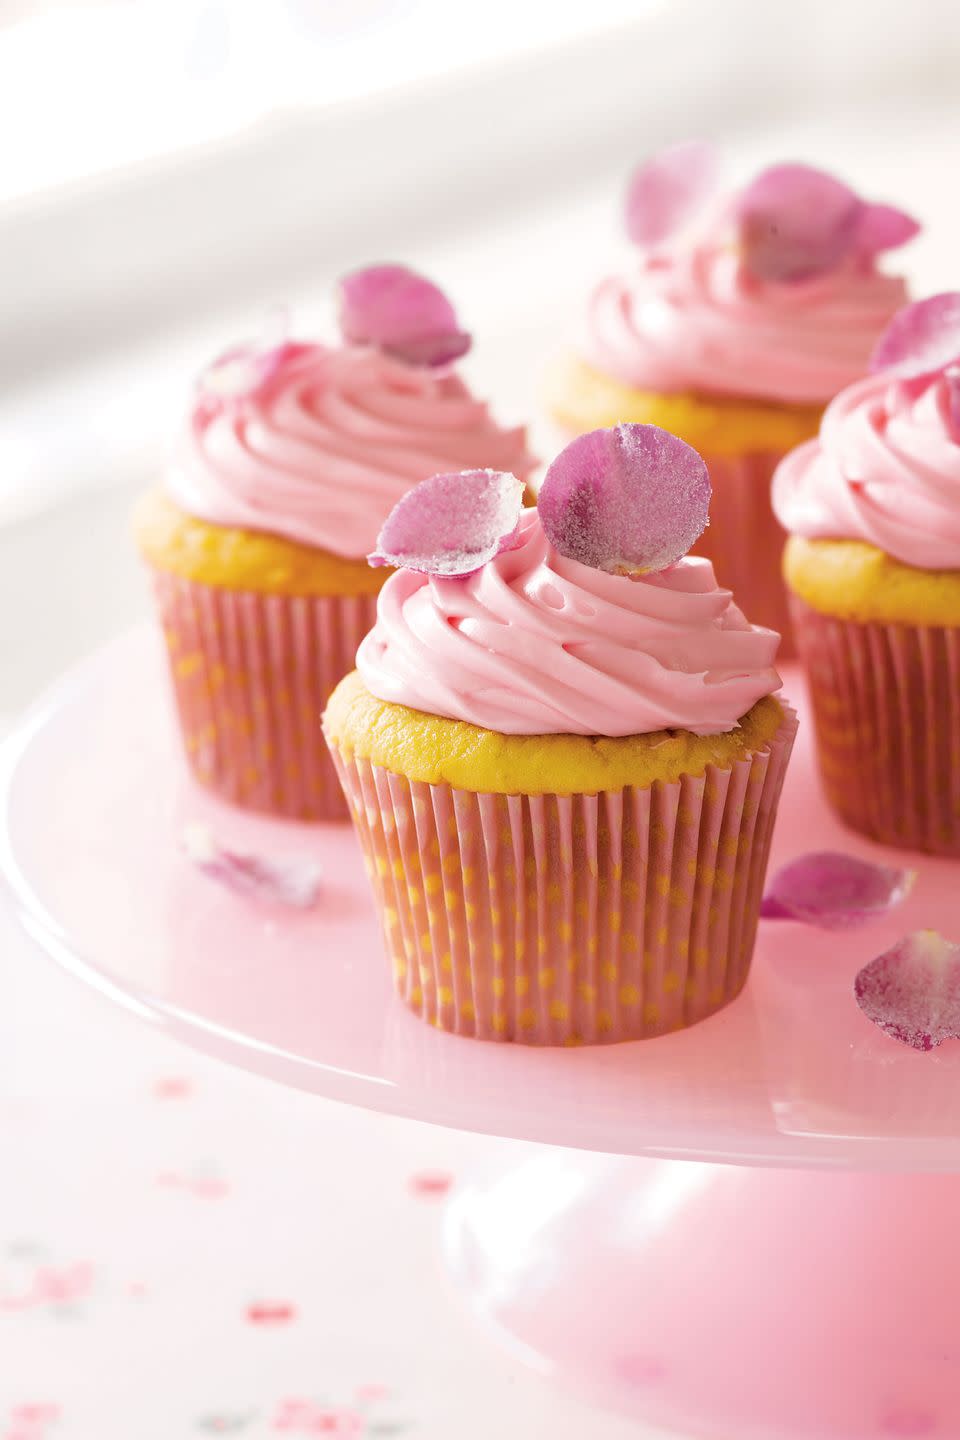 10) Rose Petal Cupcakes